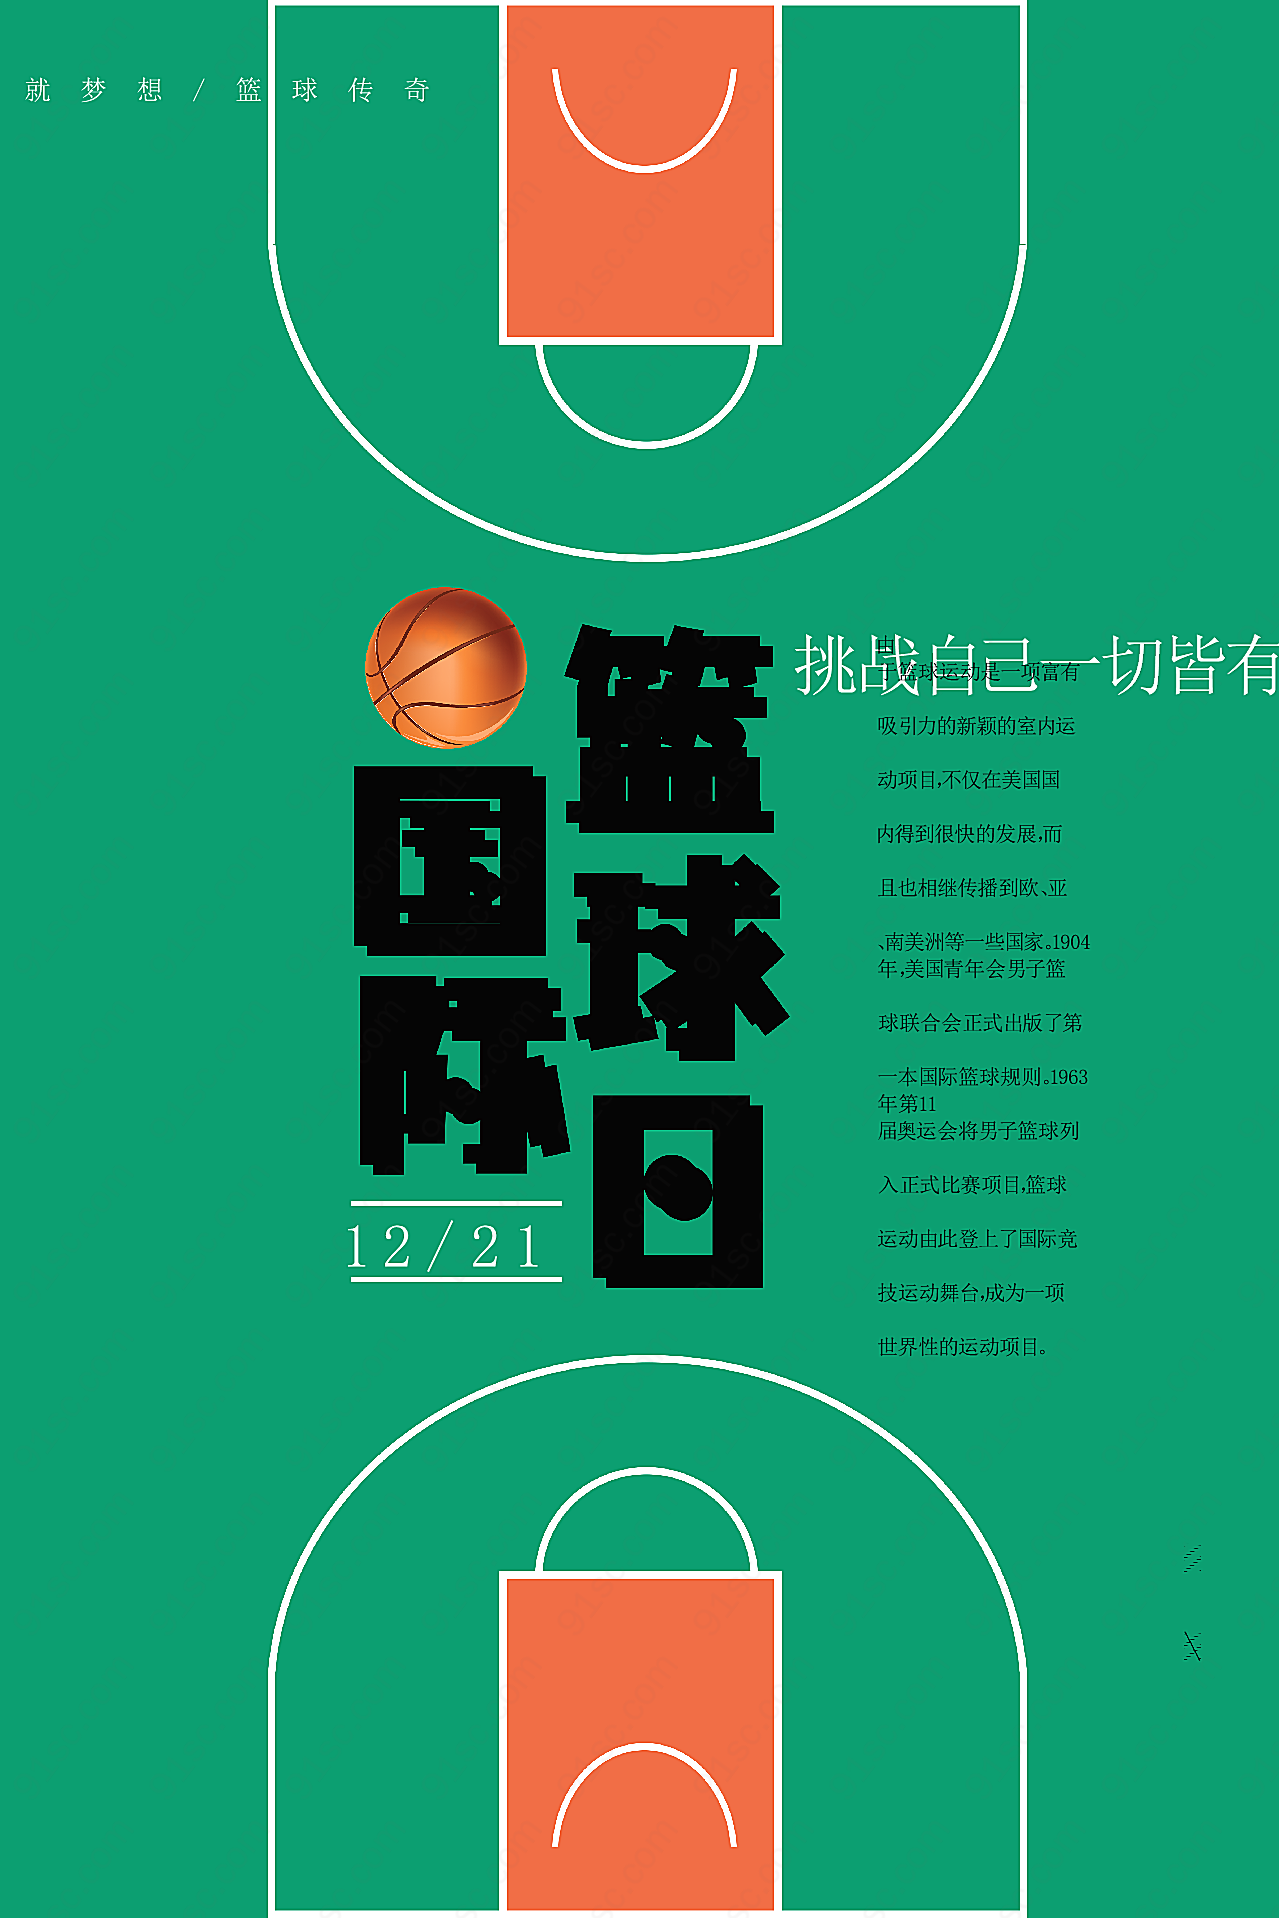 国际篮球日海报设计节日庆典